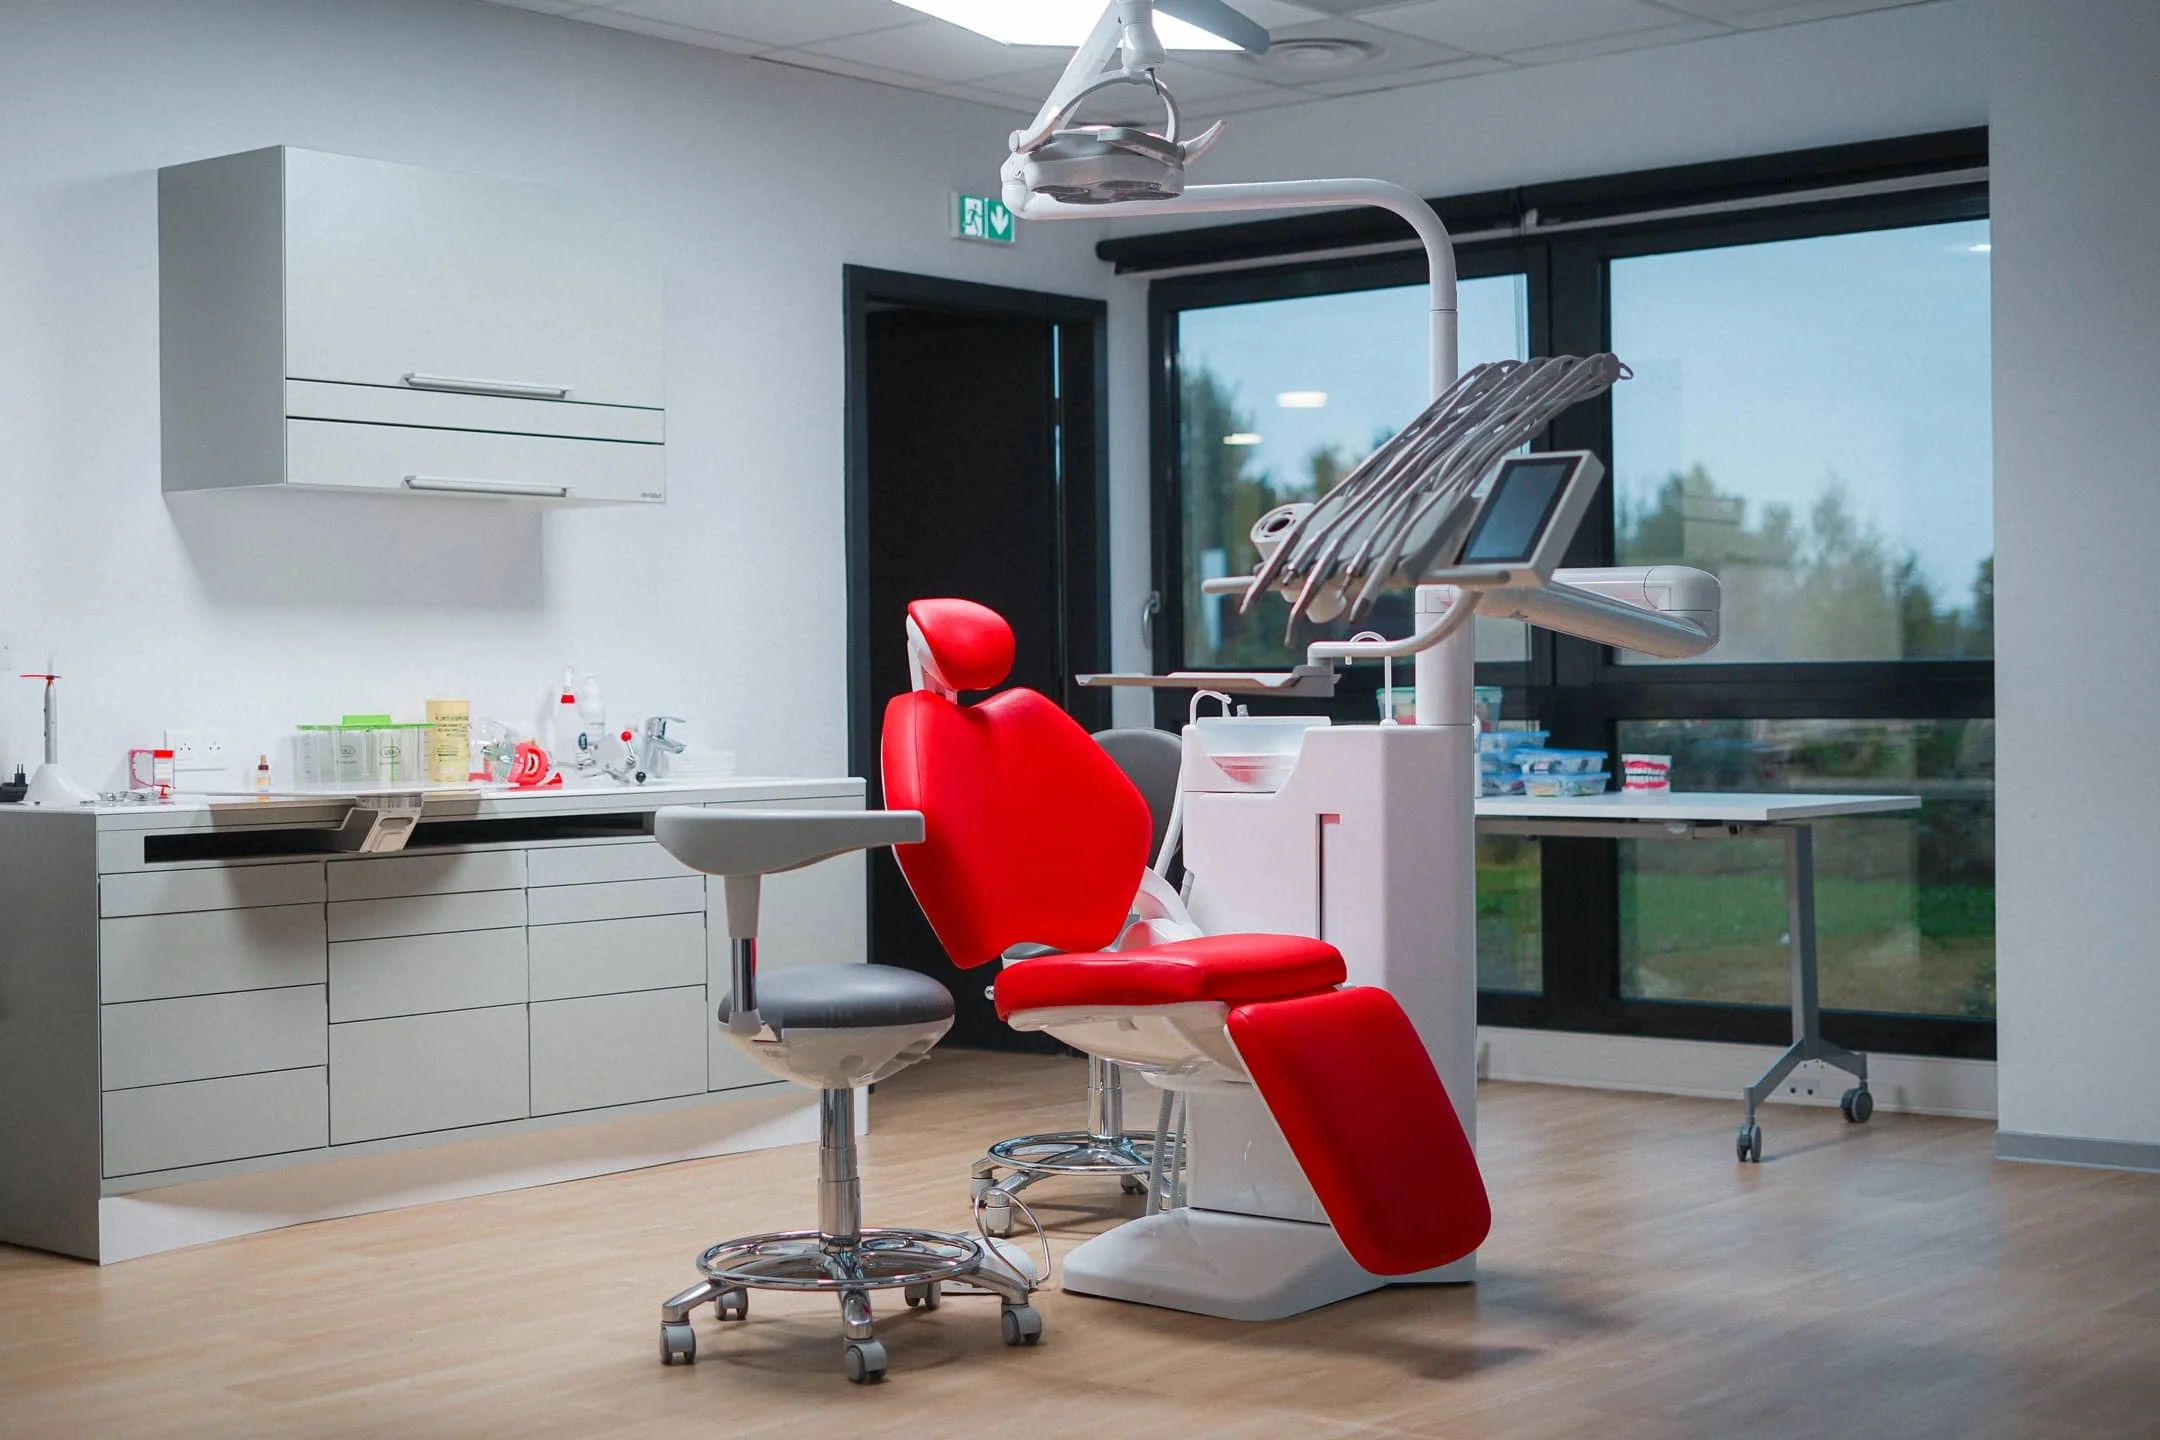 Photographie du fauteuil dentaire de notre salle de soins à l'école ELAN Dentaire de Mulhouse